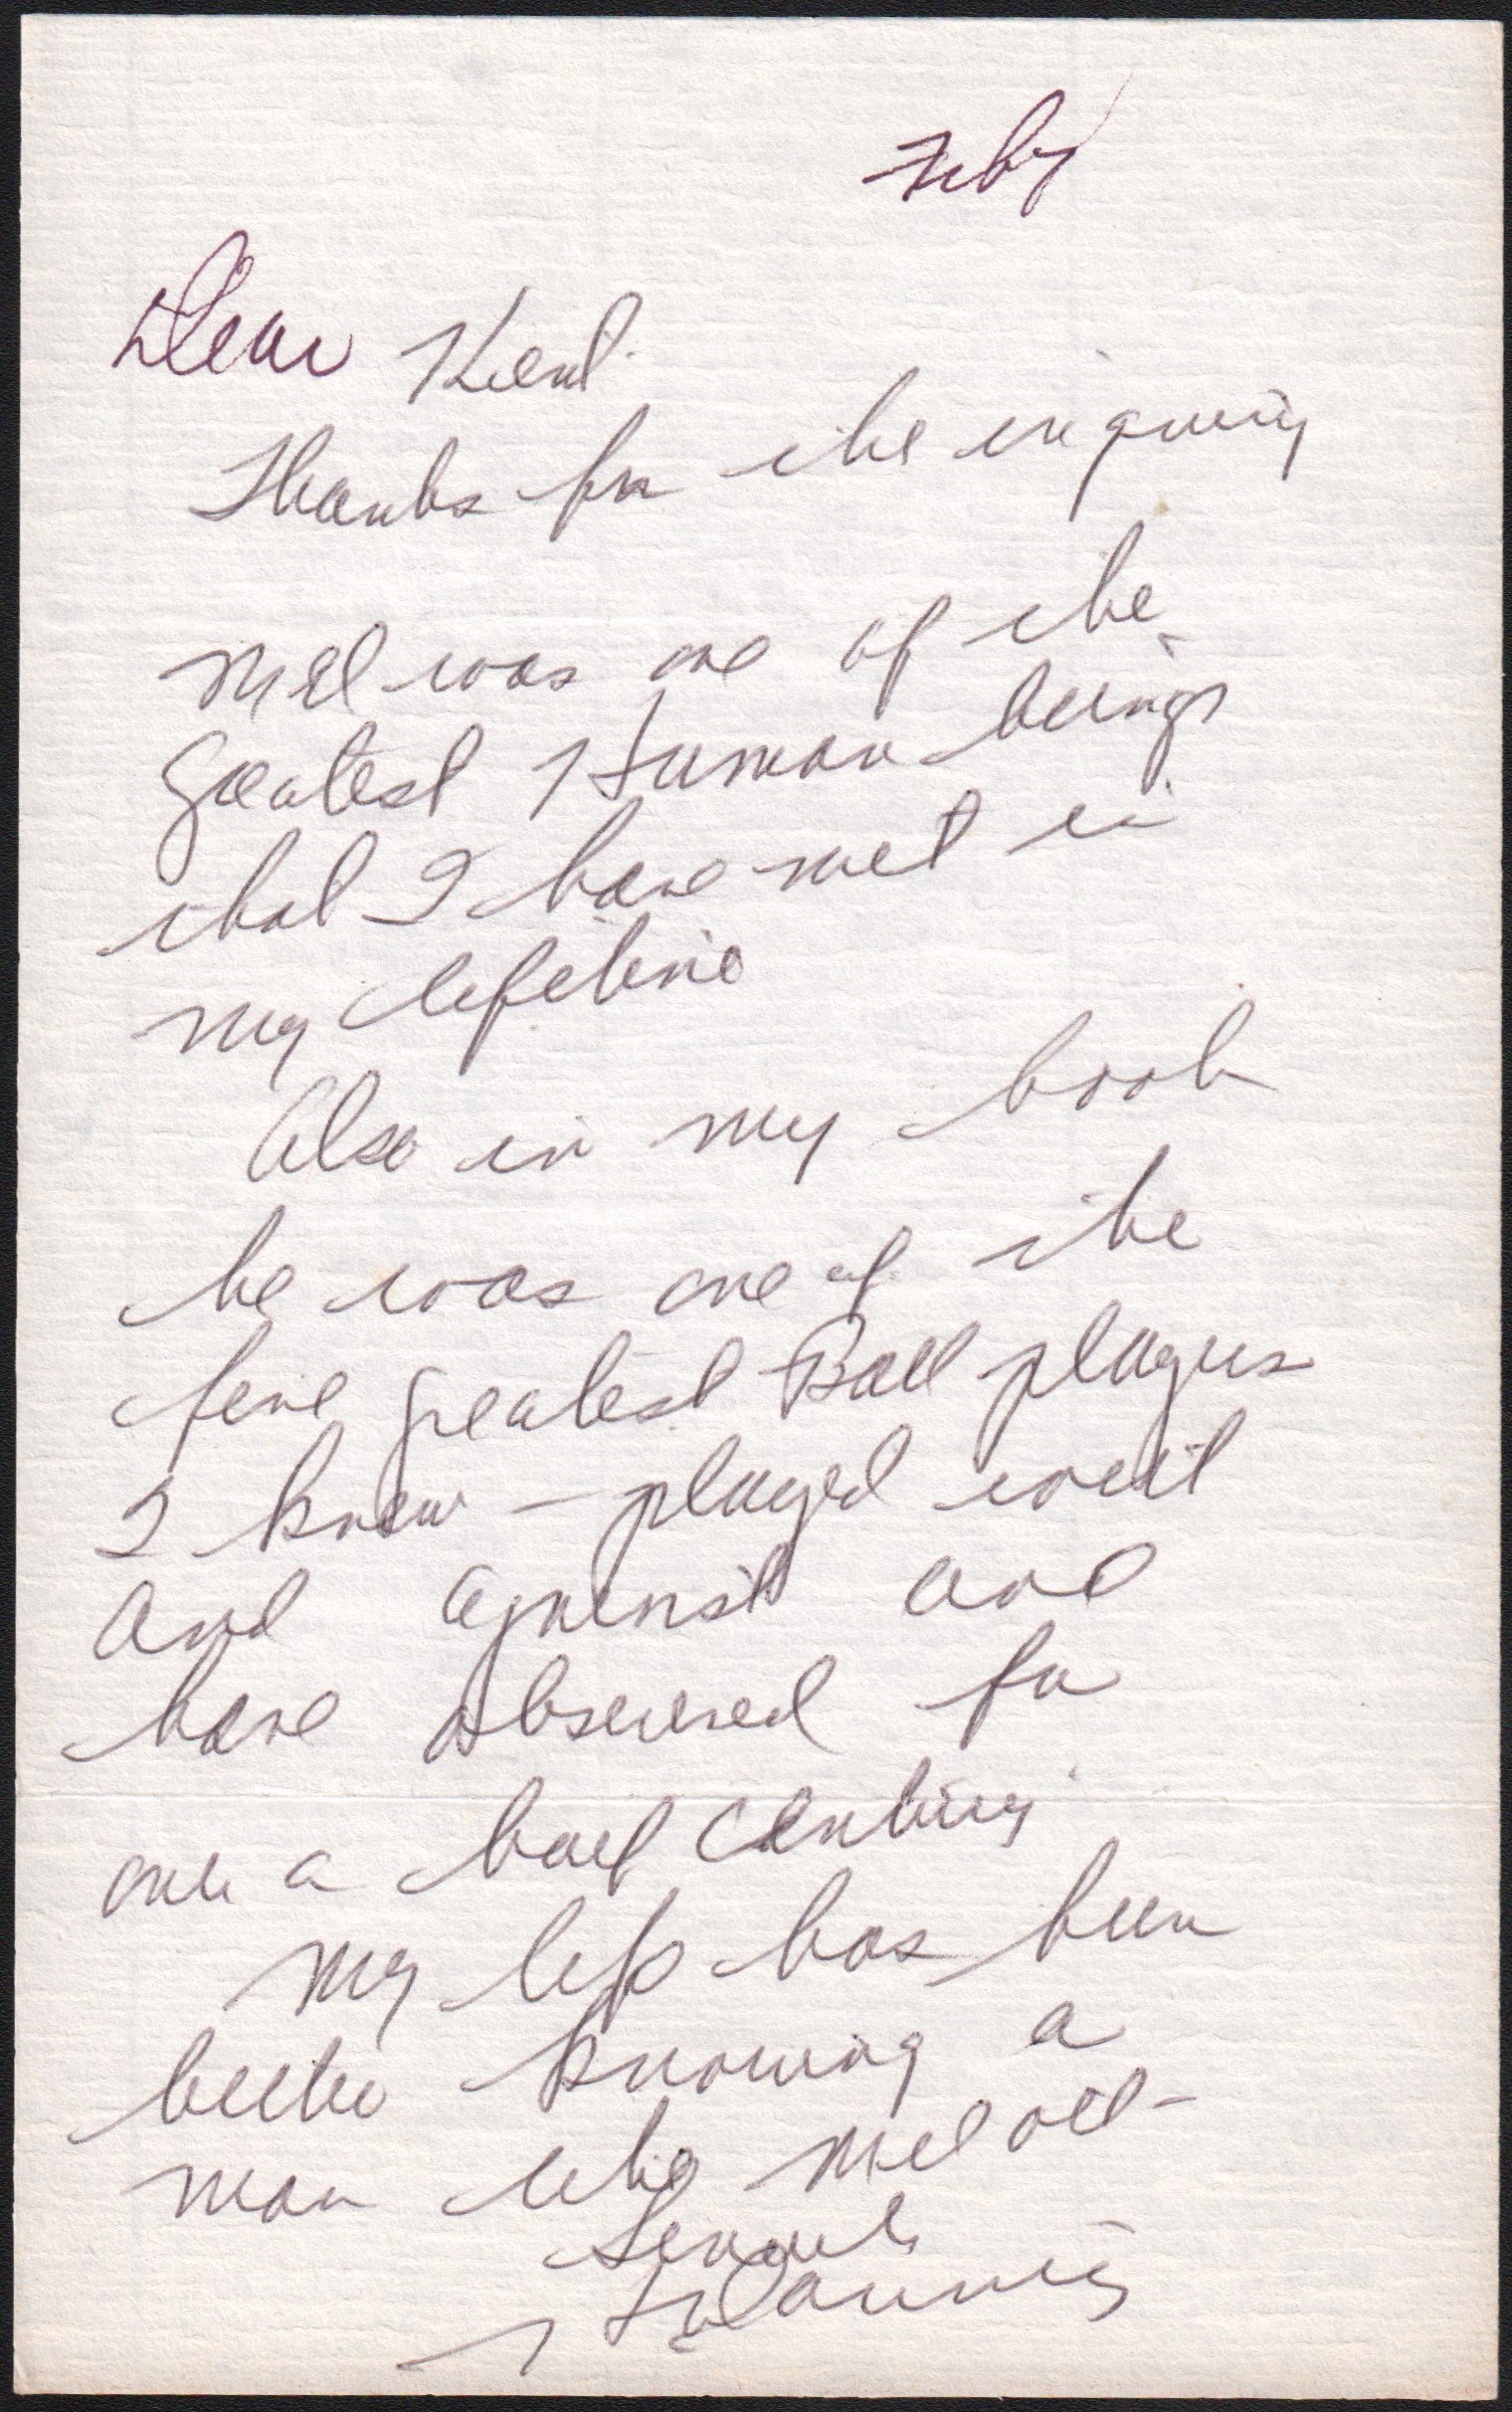 - Harry Danning Hand Written Letter w/ Mel Ott "Grestest Human Being" Content